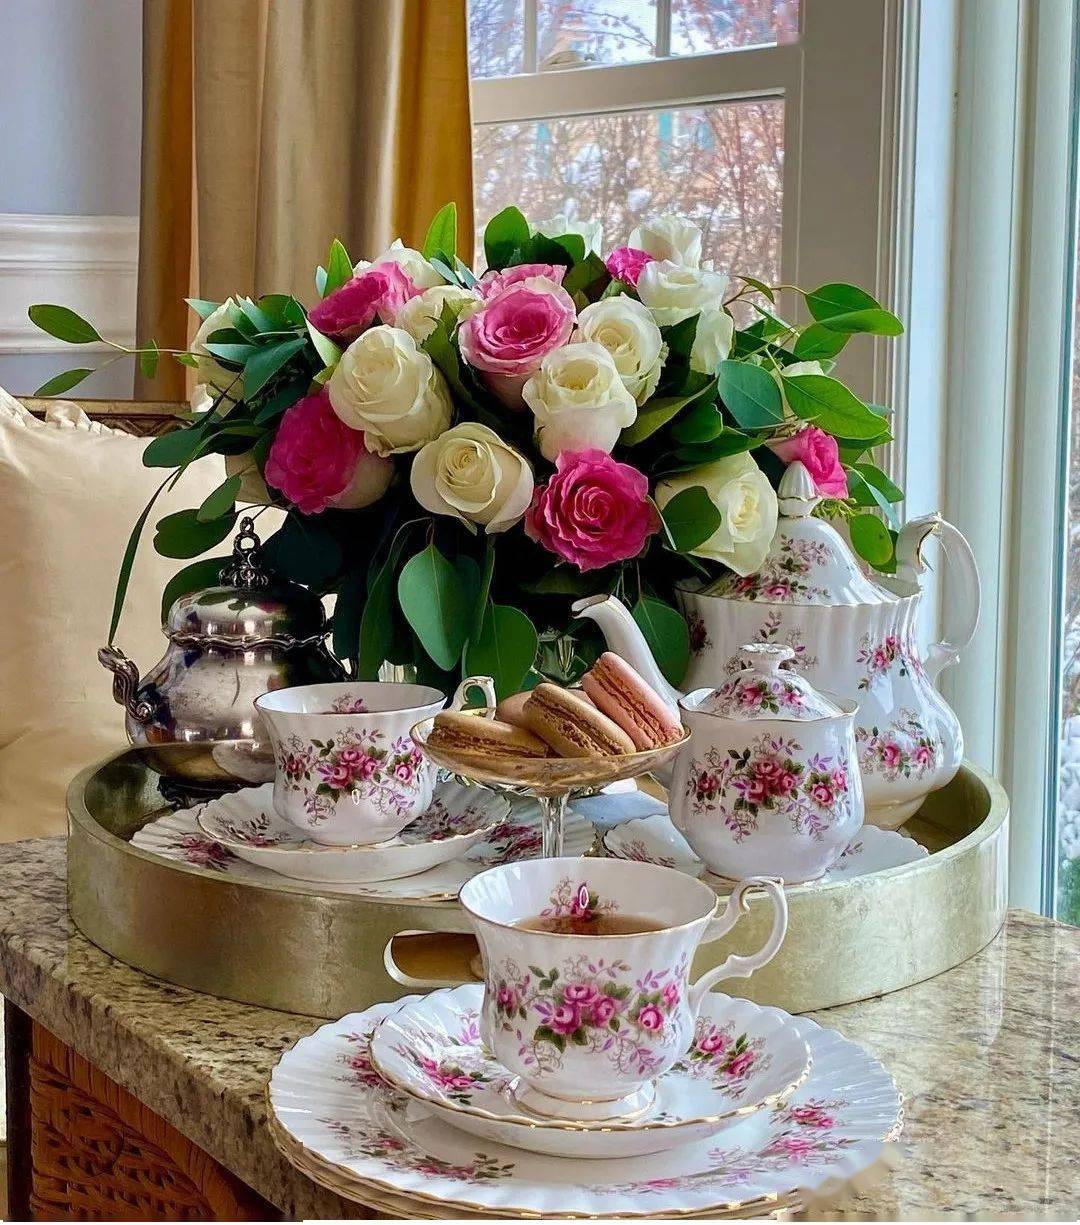 茶杯,茶壶与鲜花的邂逅